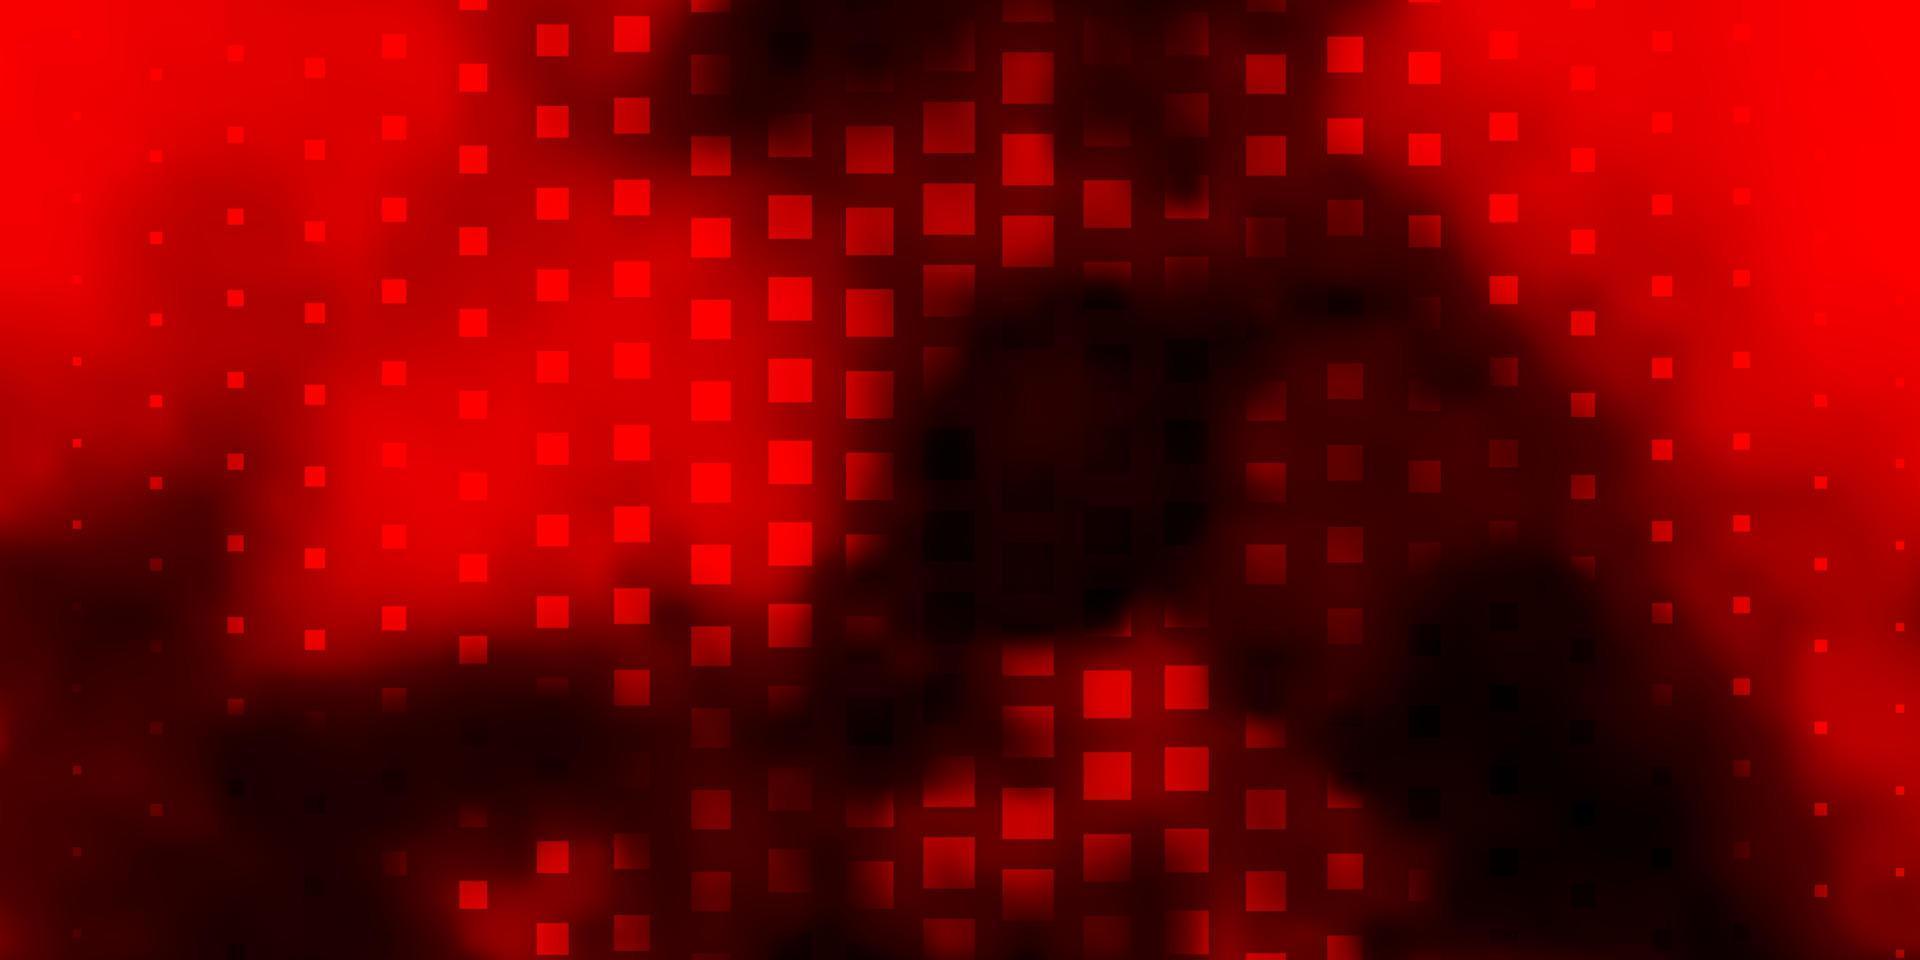 modelo de vetor vermelho escuro em retângulos.